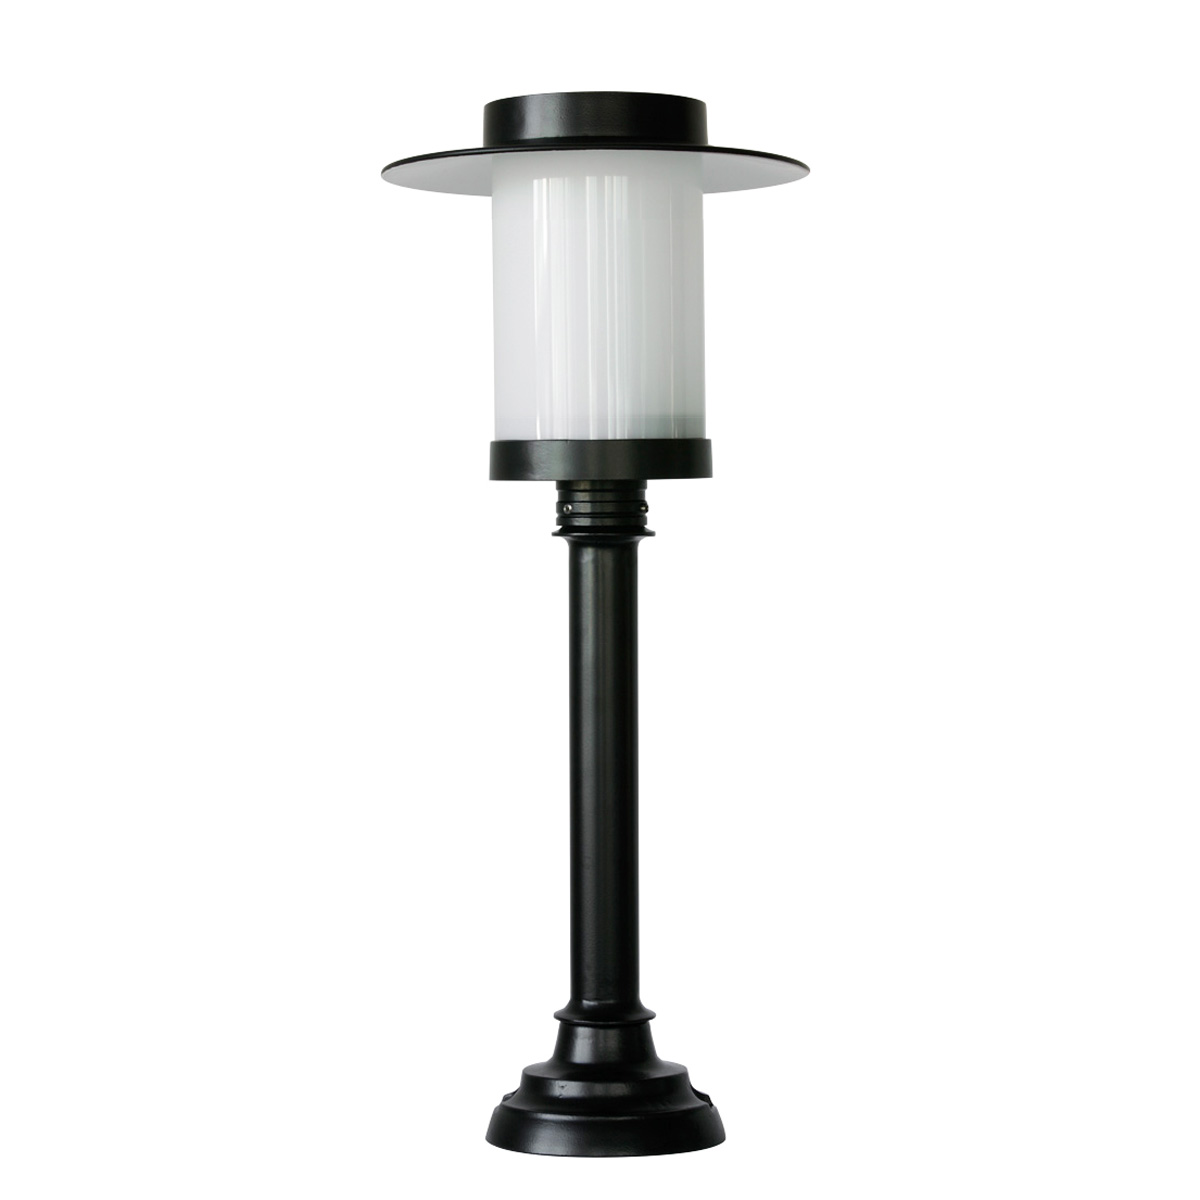 Small tube lamp shade made of cast aluminium Elba 37 A3